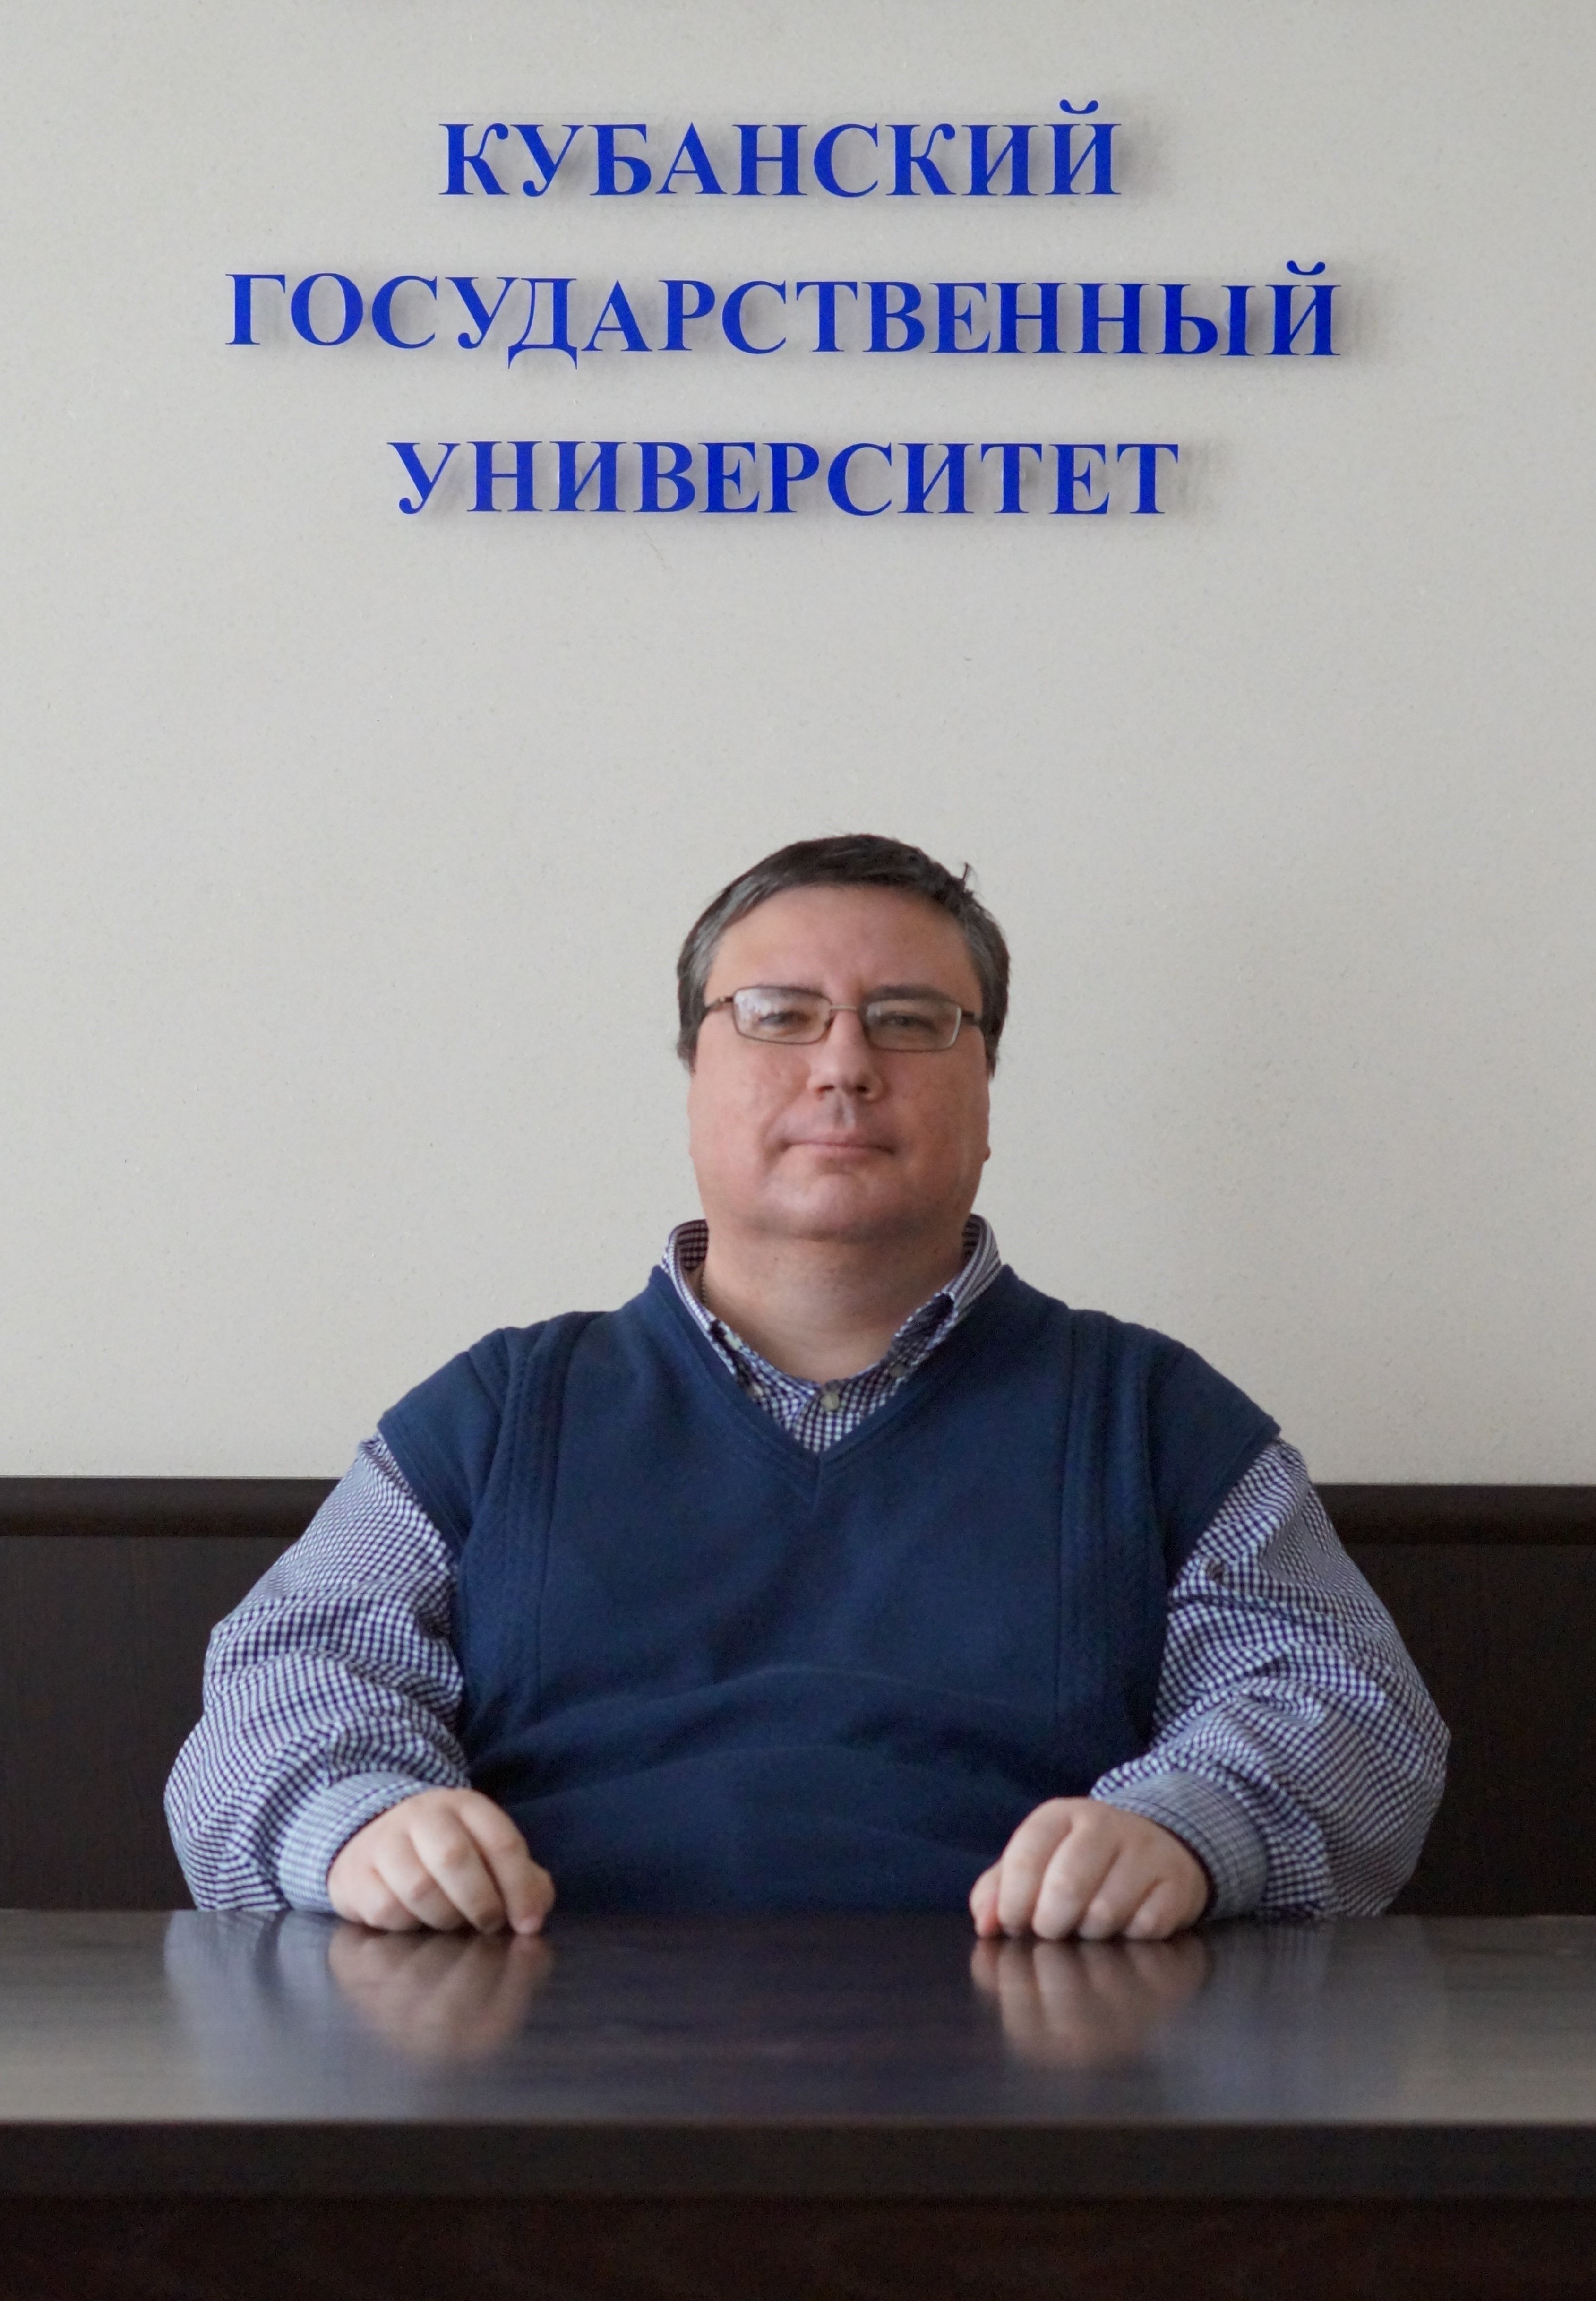 Сергей Просветов Википедия Фото